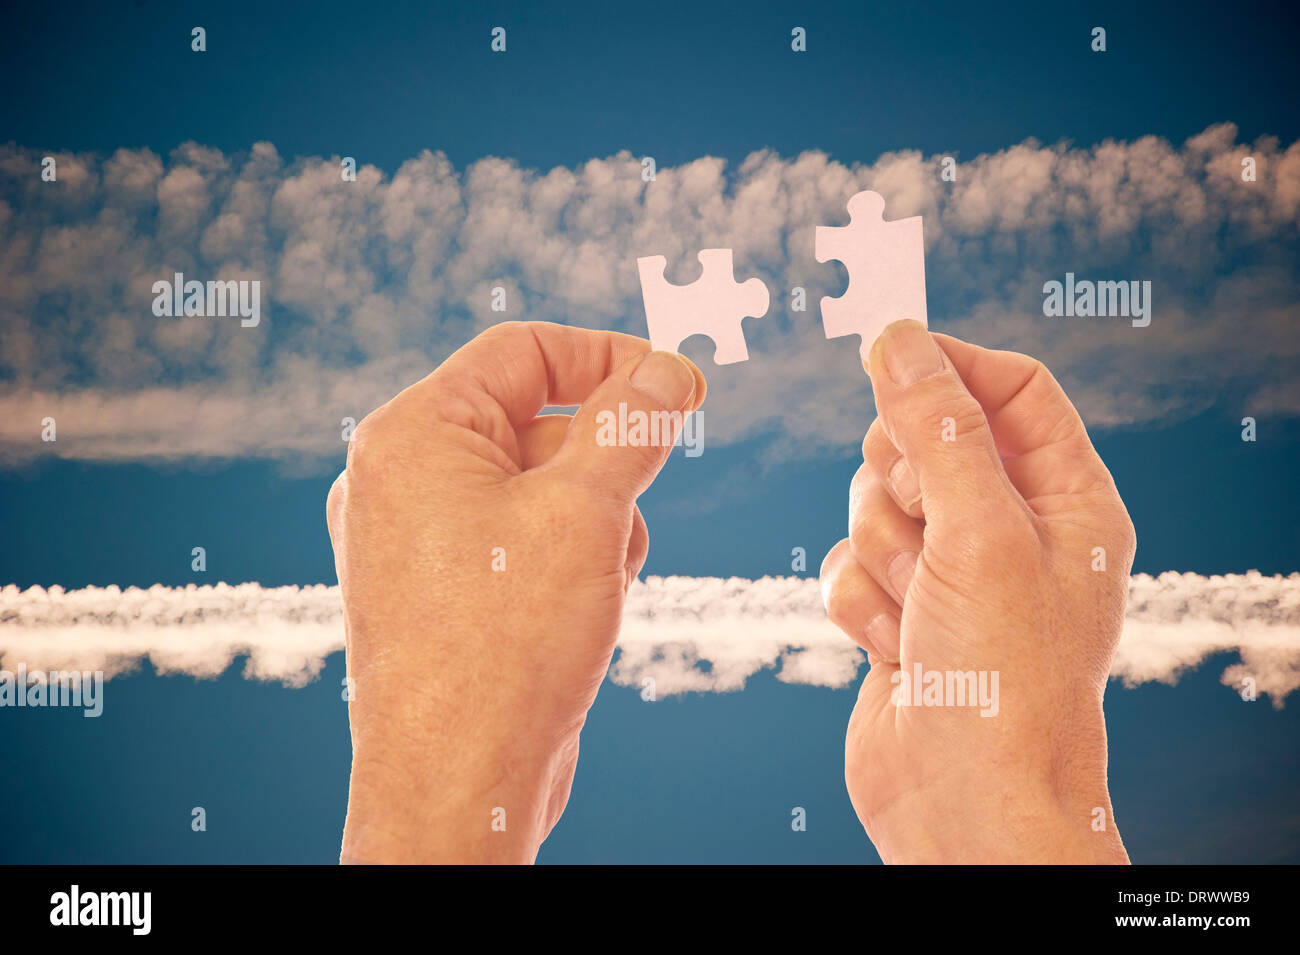 Zwei Hände in der Silhouette vor einem blauen Himmel mit Vapor Trails verbinden Jigsaw Puzzle-Teile Stockfoto